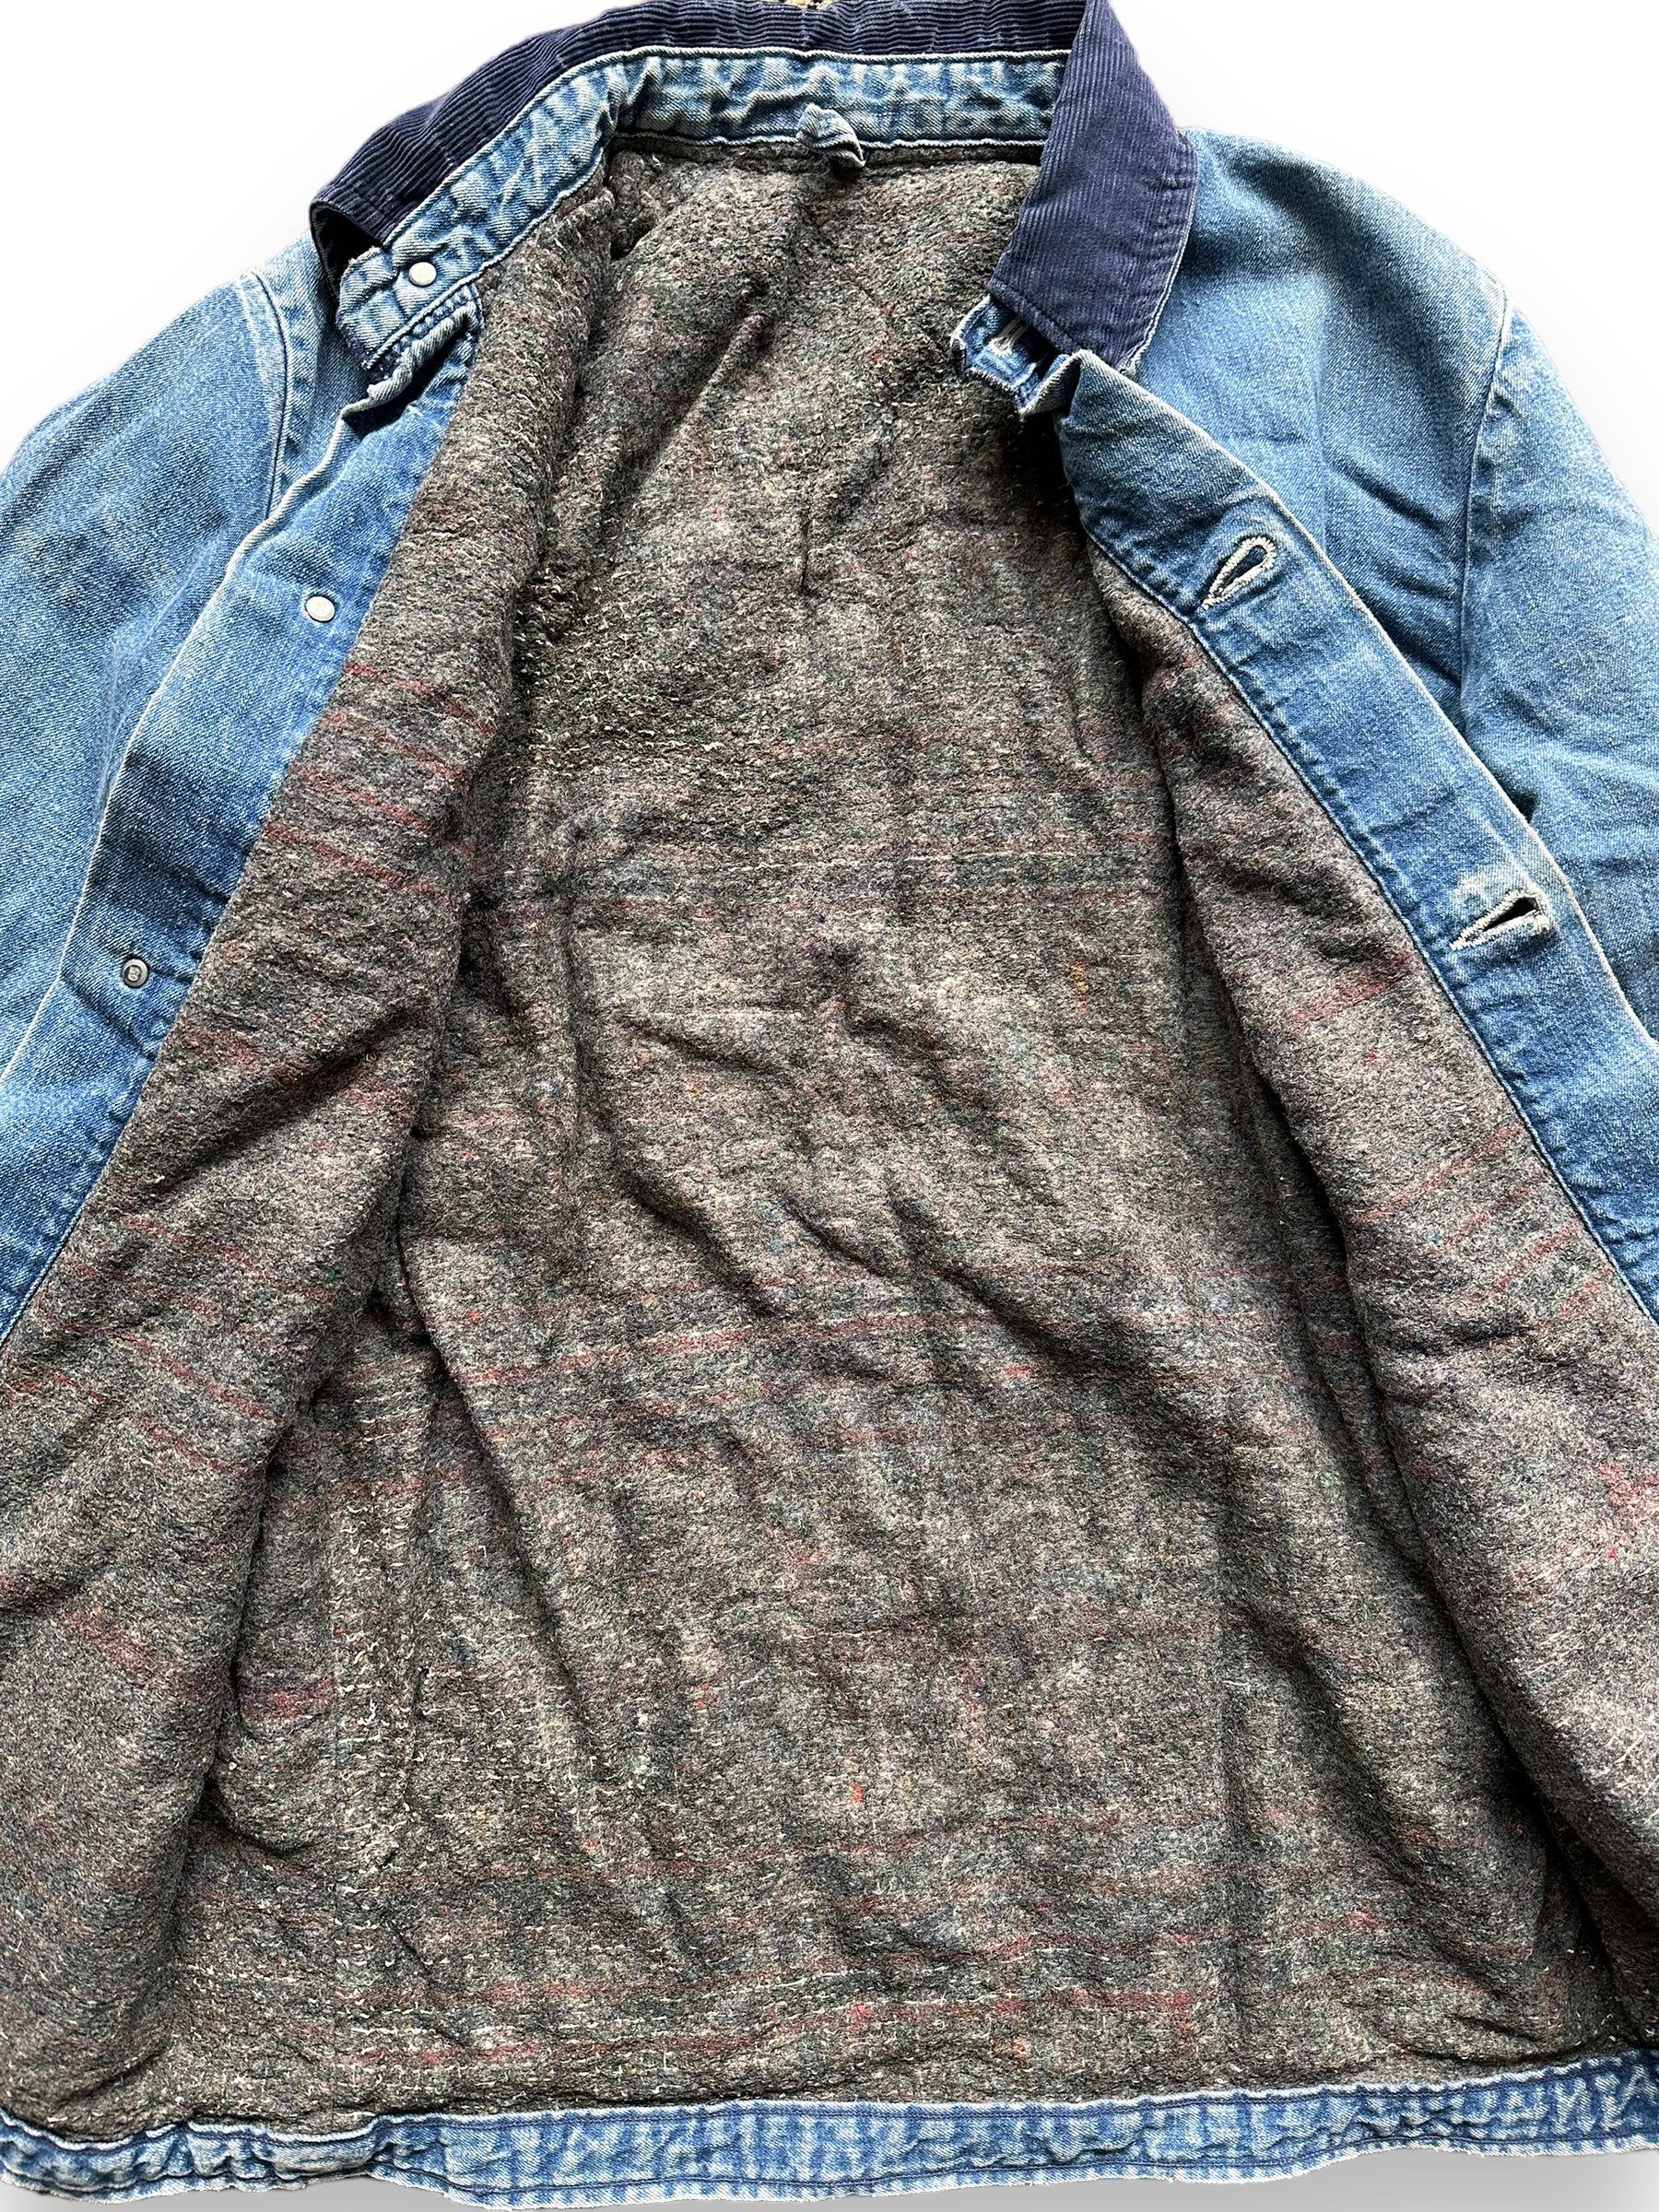 Liner Close Up on Vintage Wrangler Blanket Lined Denim Chore Coat SZ 34 | Seattle Vintage Workwear | Barn Owl Vintage Seattle